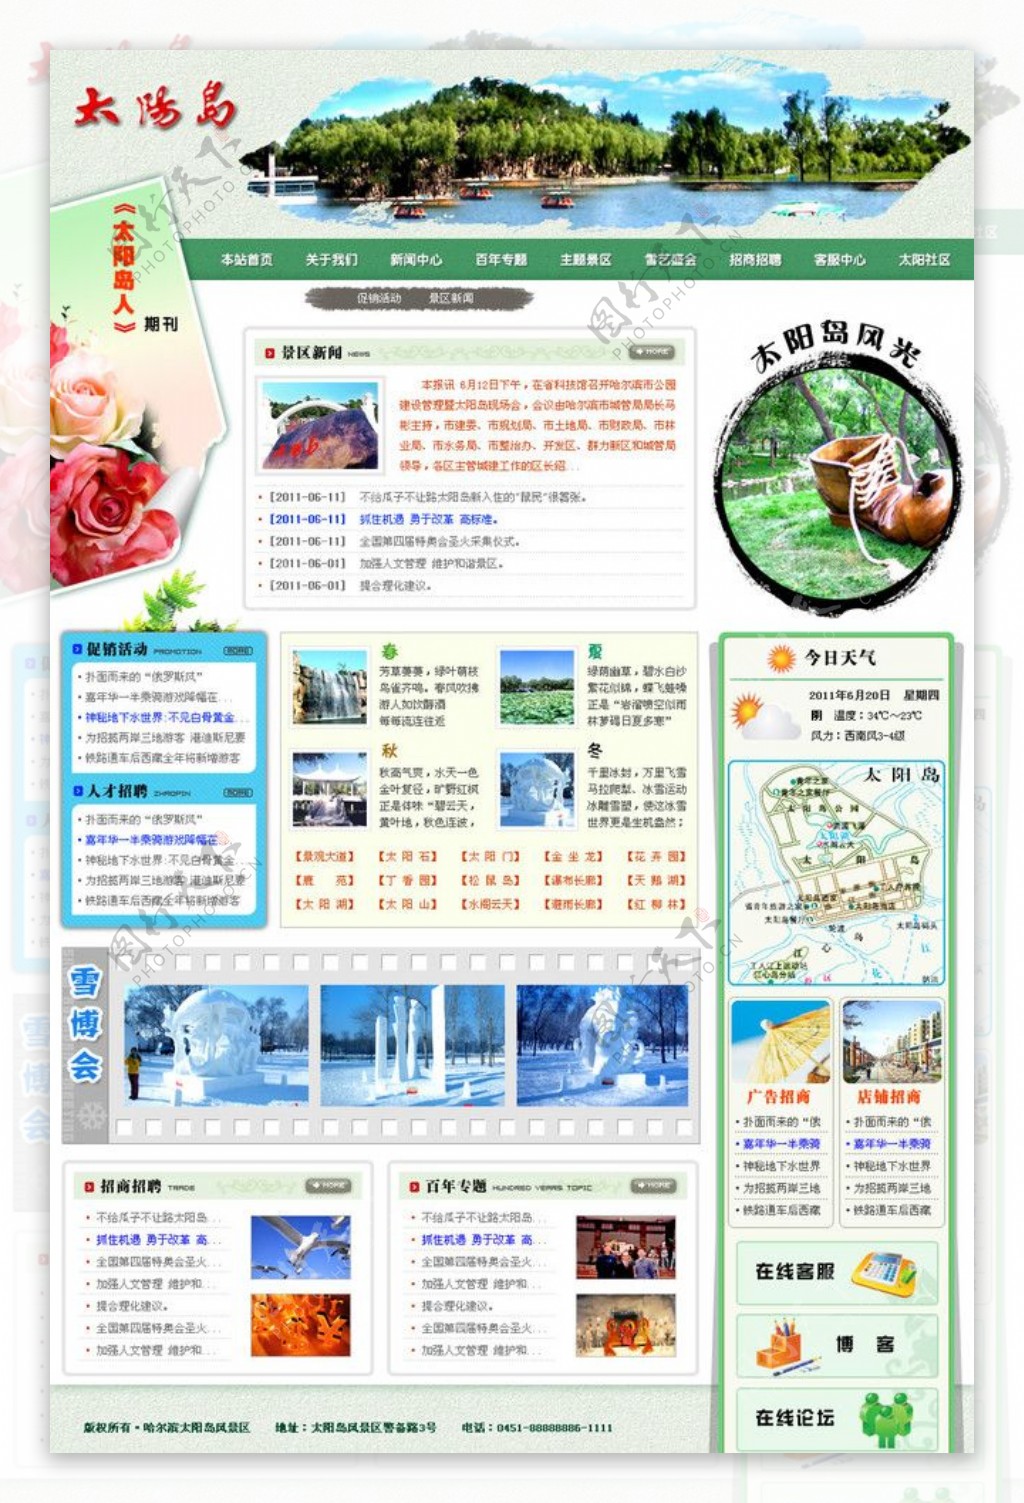 太阳岛风景旅游景区网站模板图片